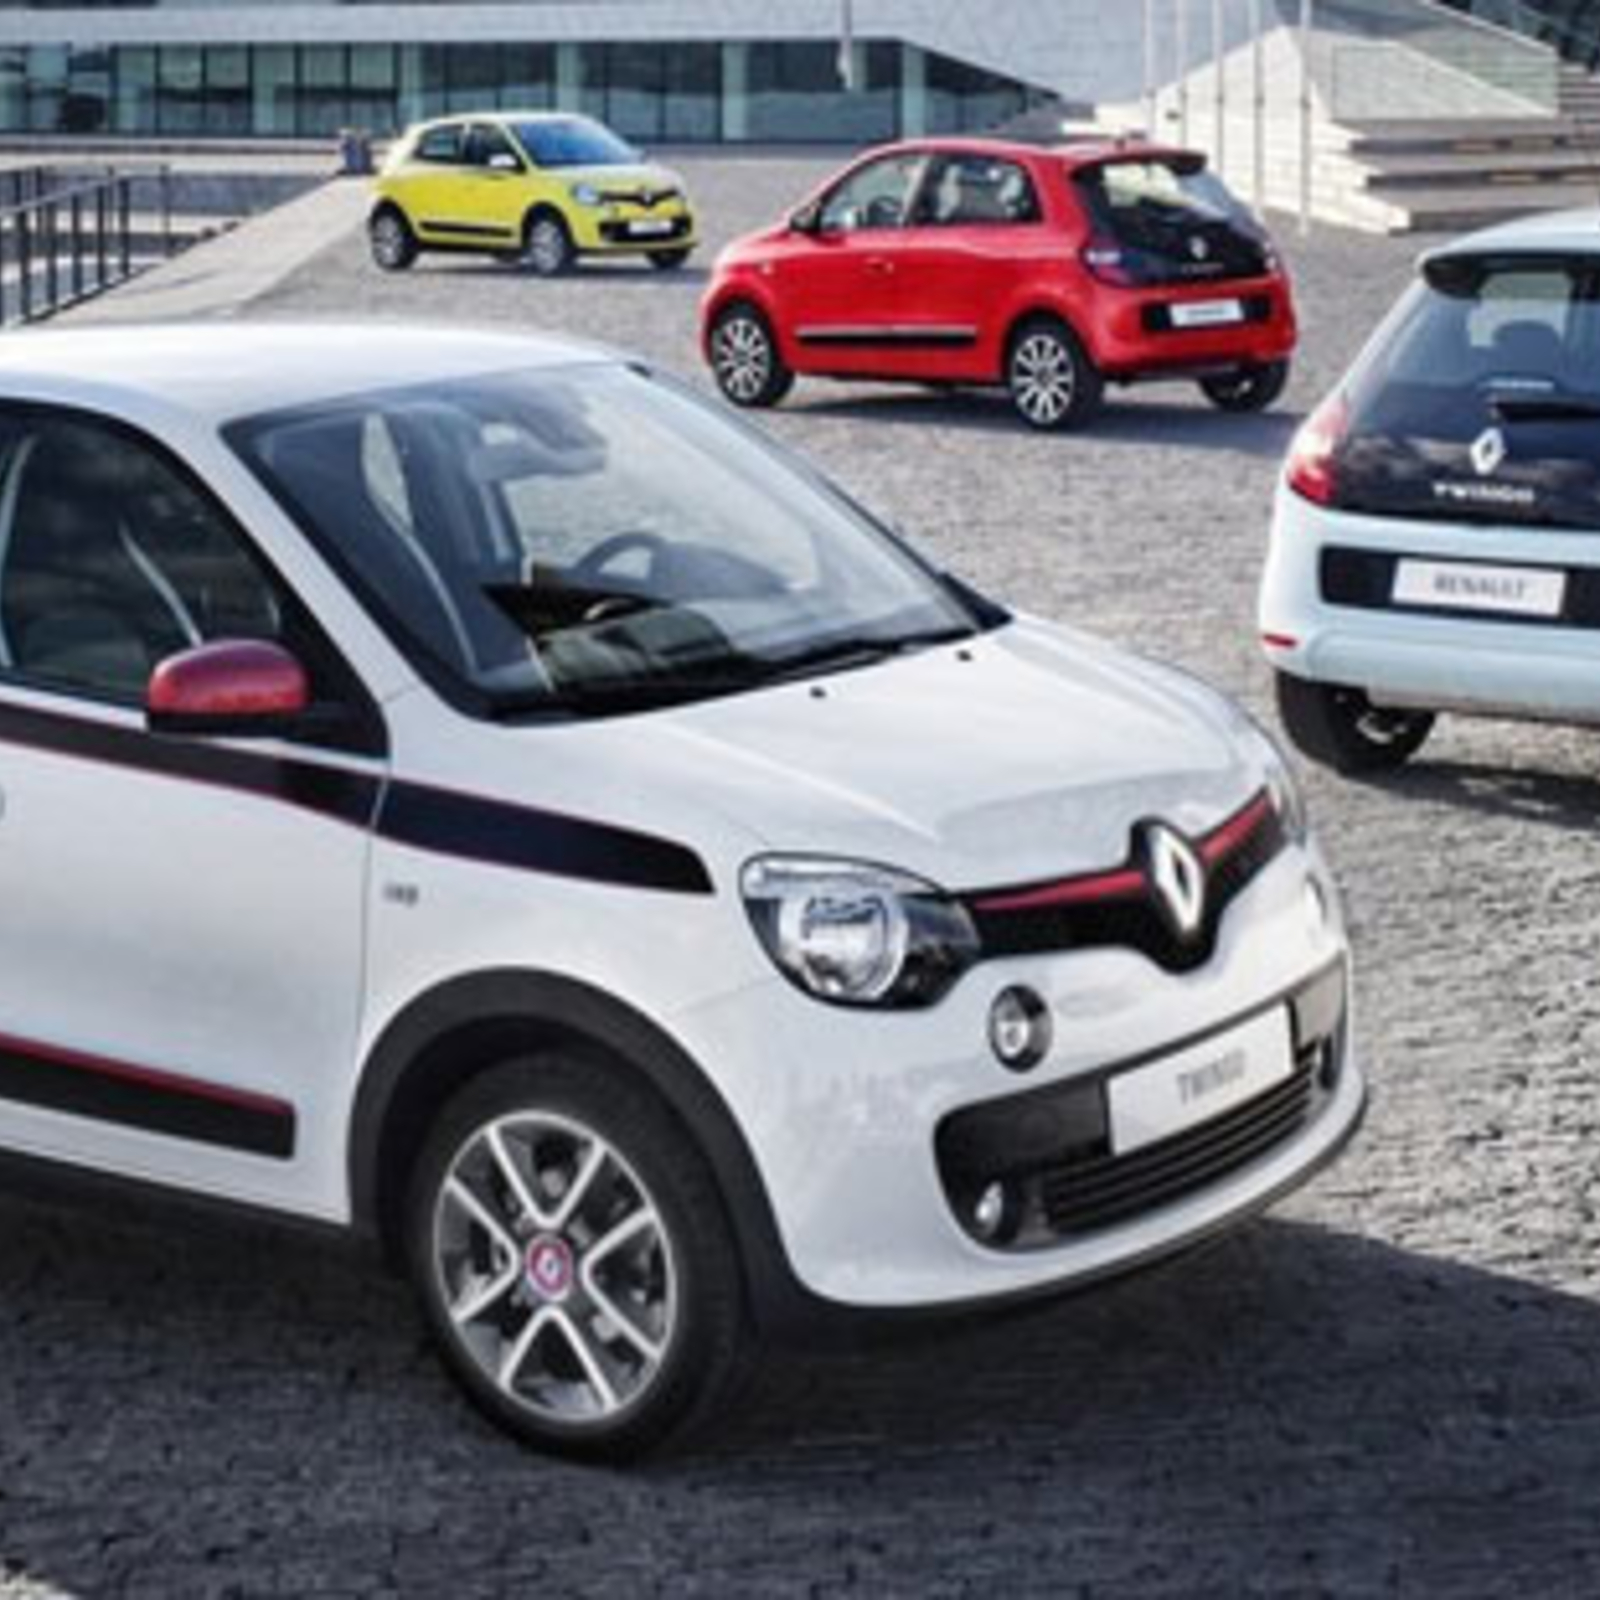 Fahrbericht: Renault Twingo: Mit Motor und Antrieb im Heck